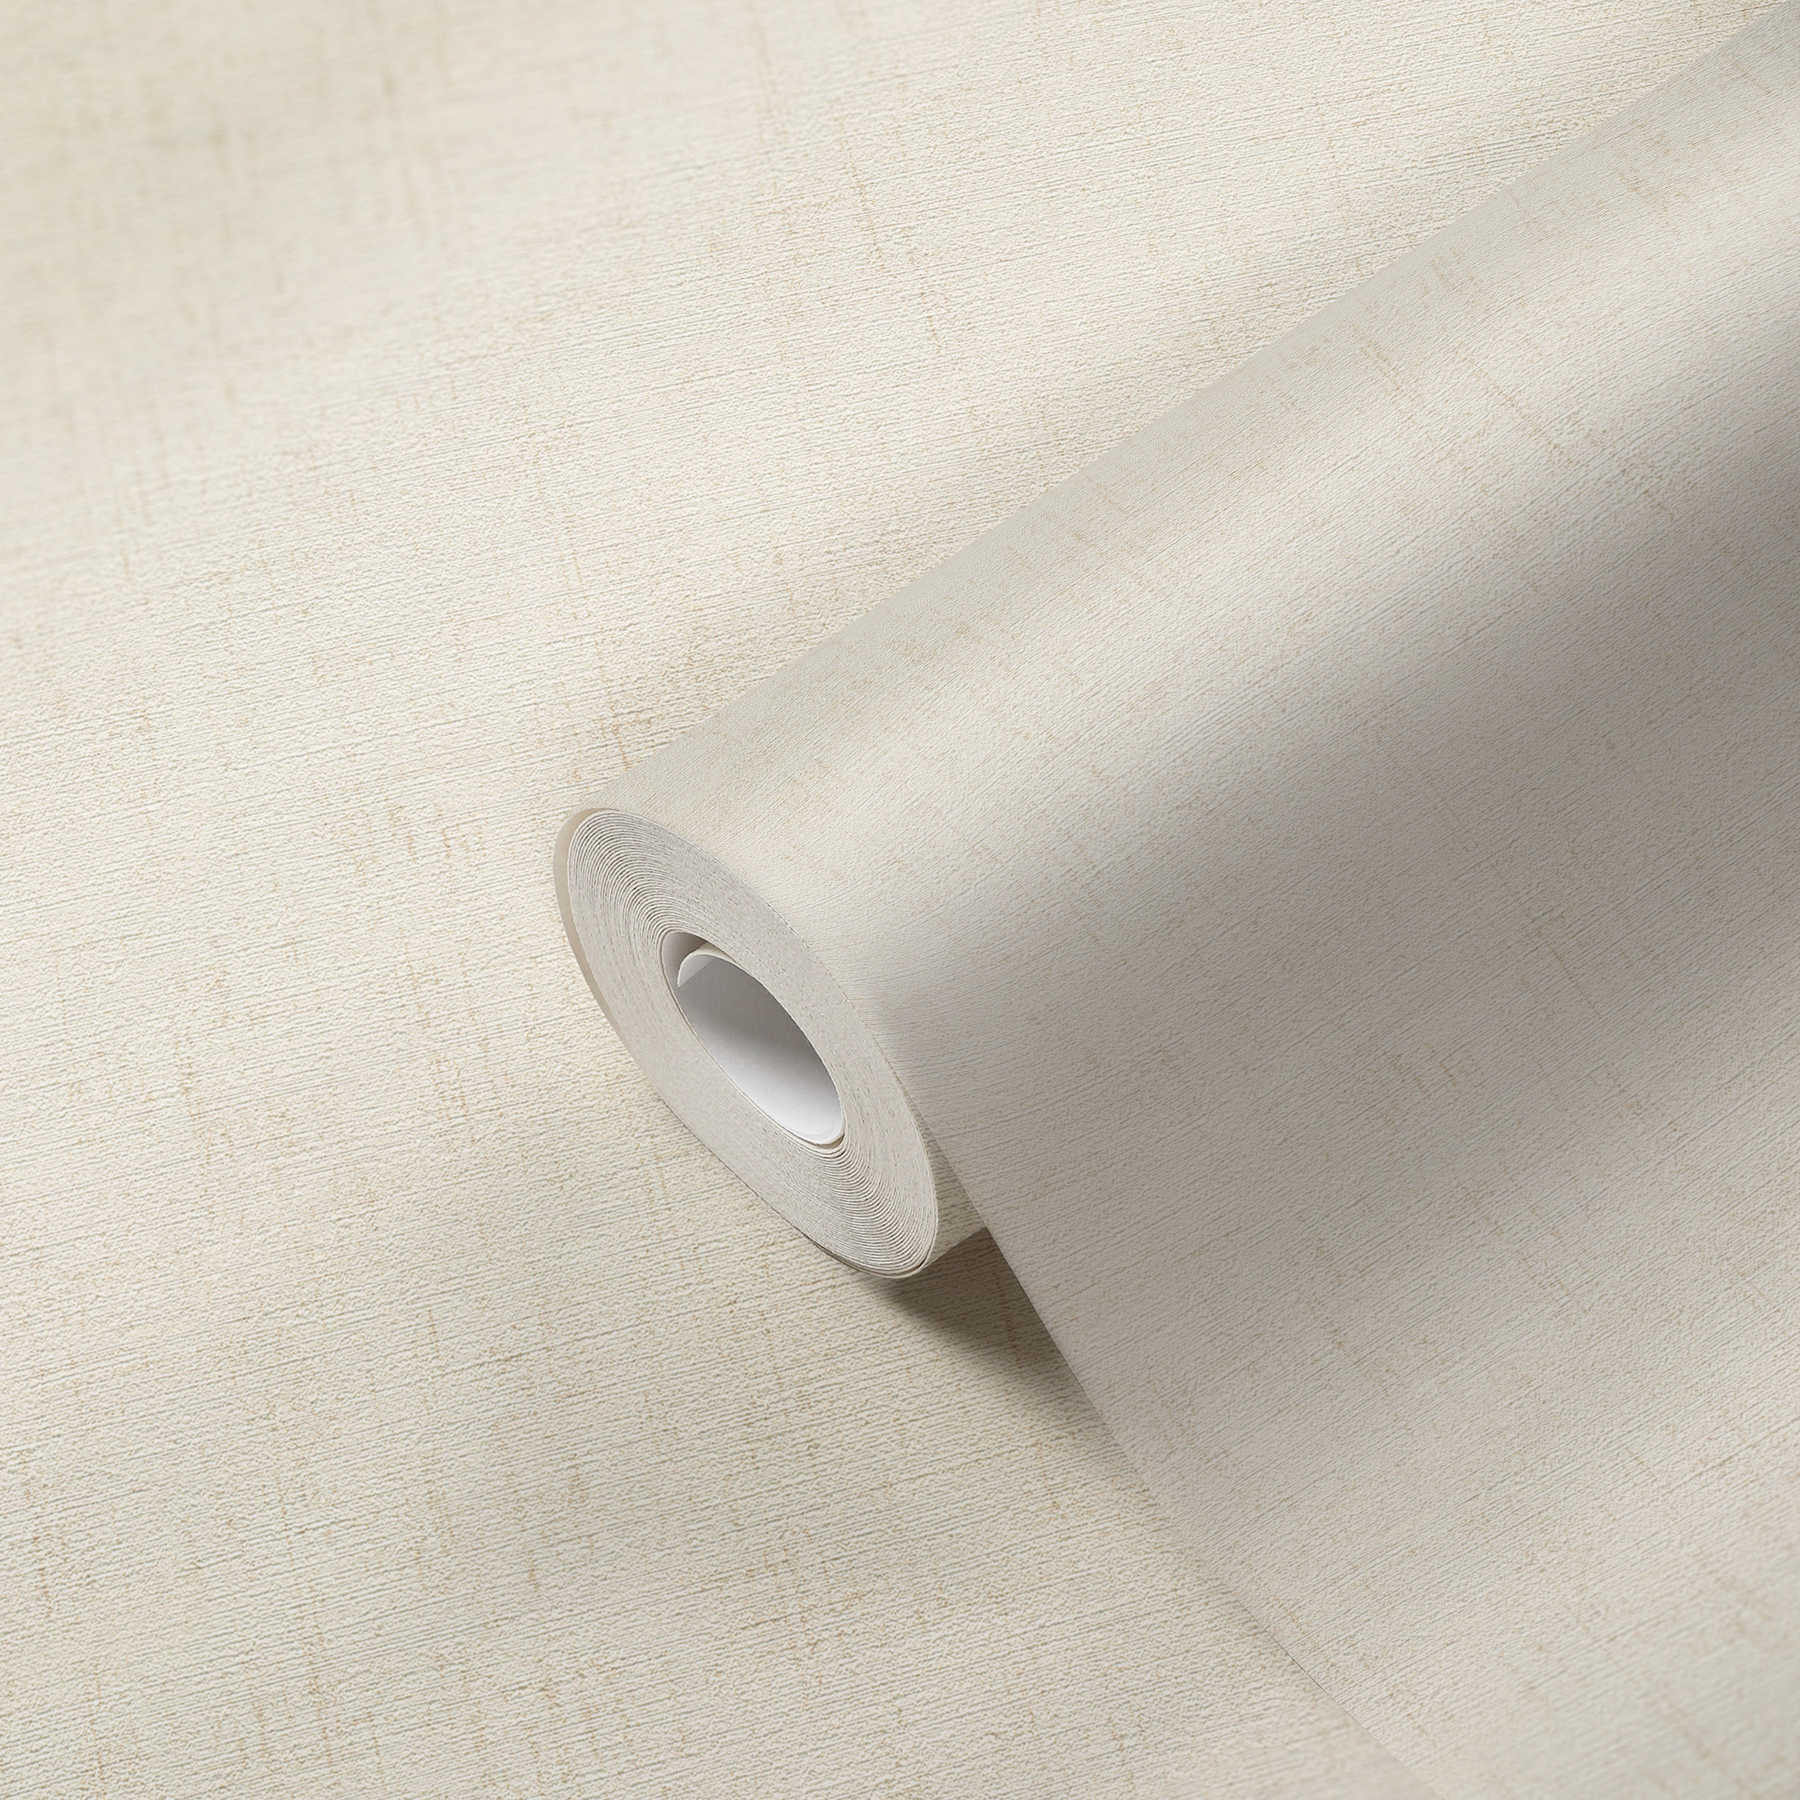             Papel pintado metálico blanco con brillo nacarado y superficie texturizada
        